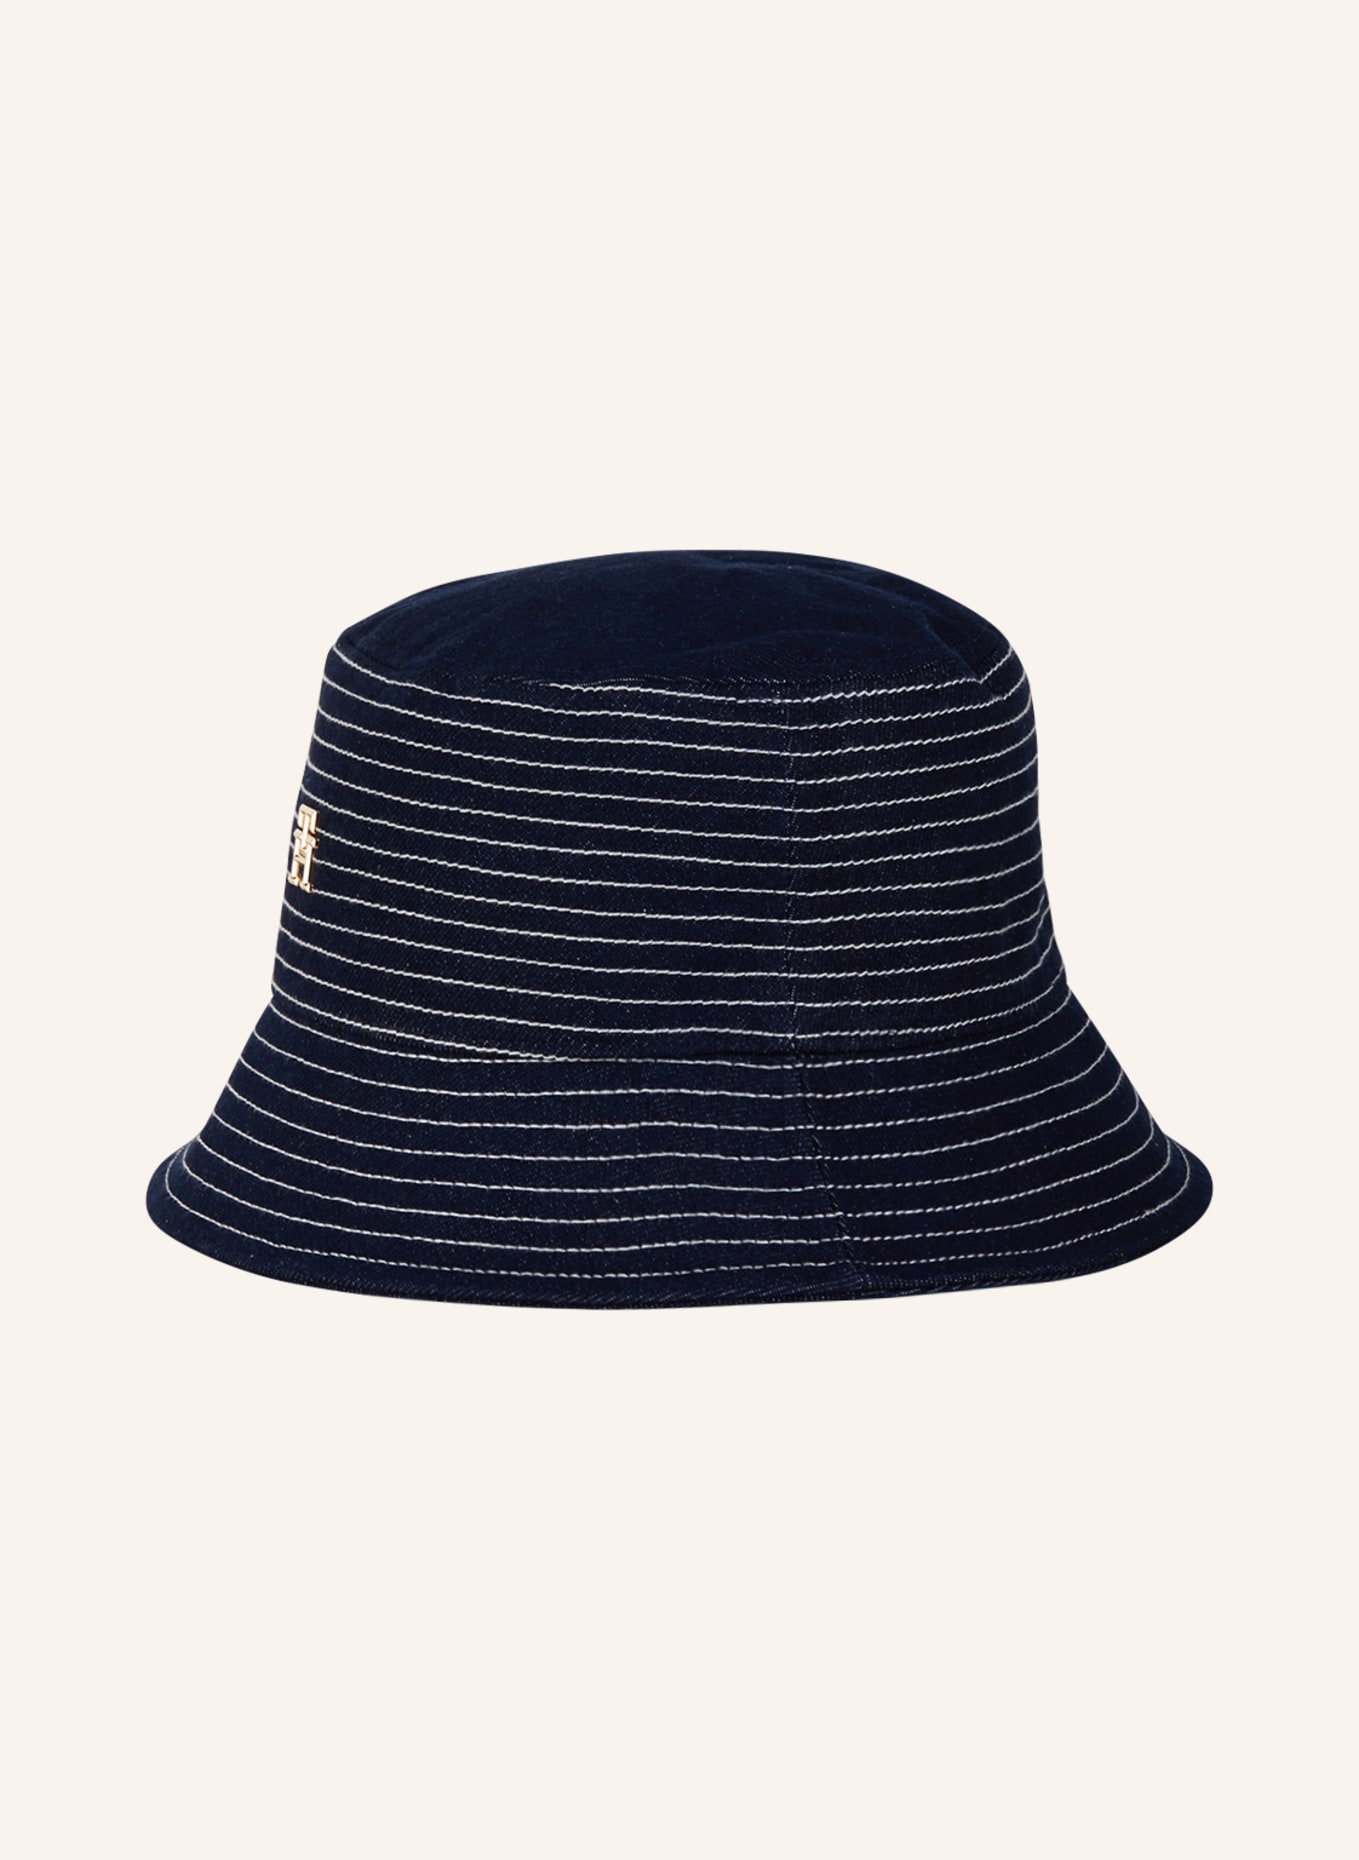 TOMMY HILFIGER Bucket hat, Color: DARK BLUE/ WHITE (Image 2)